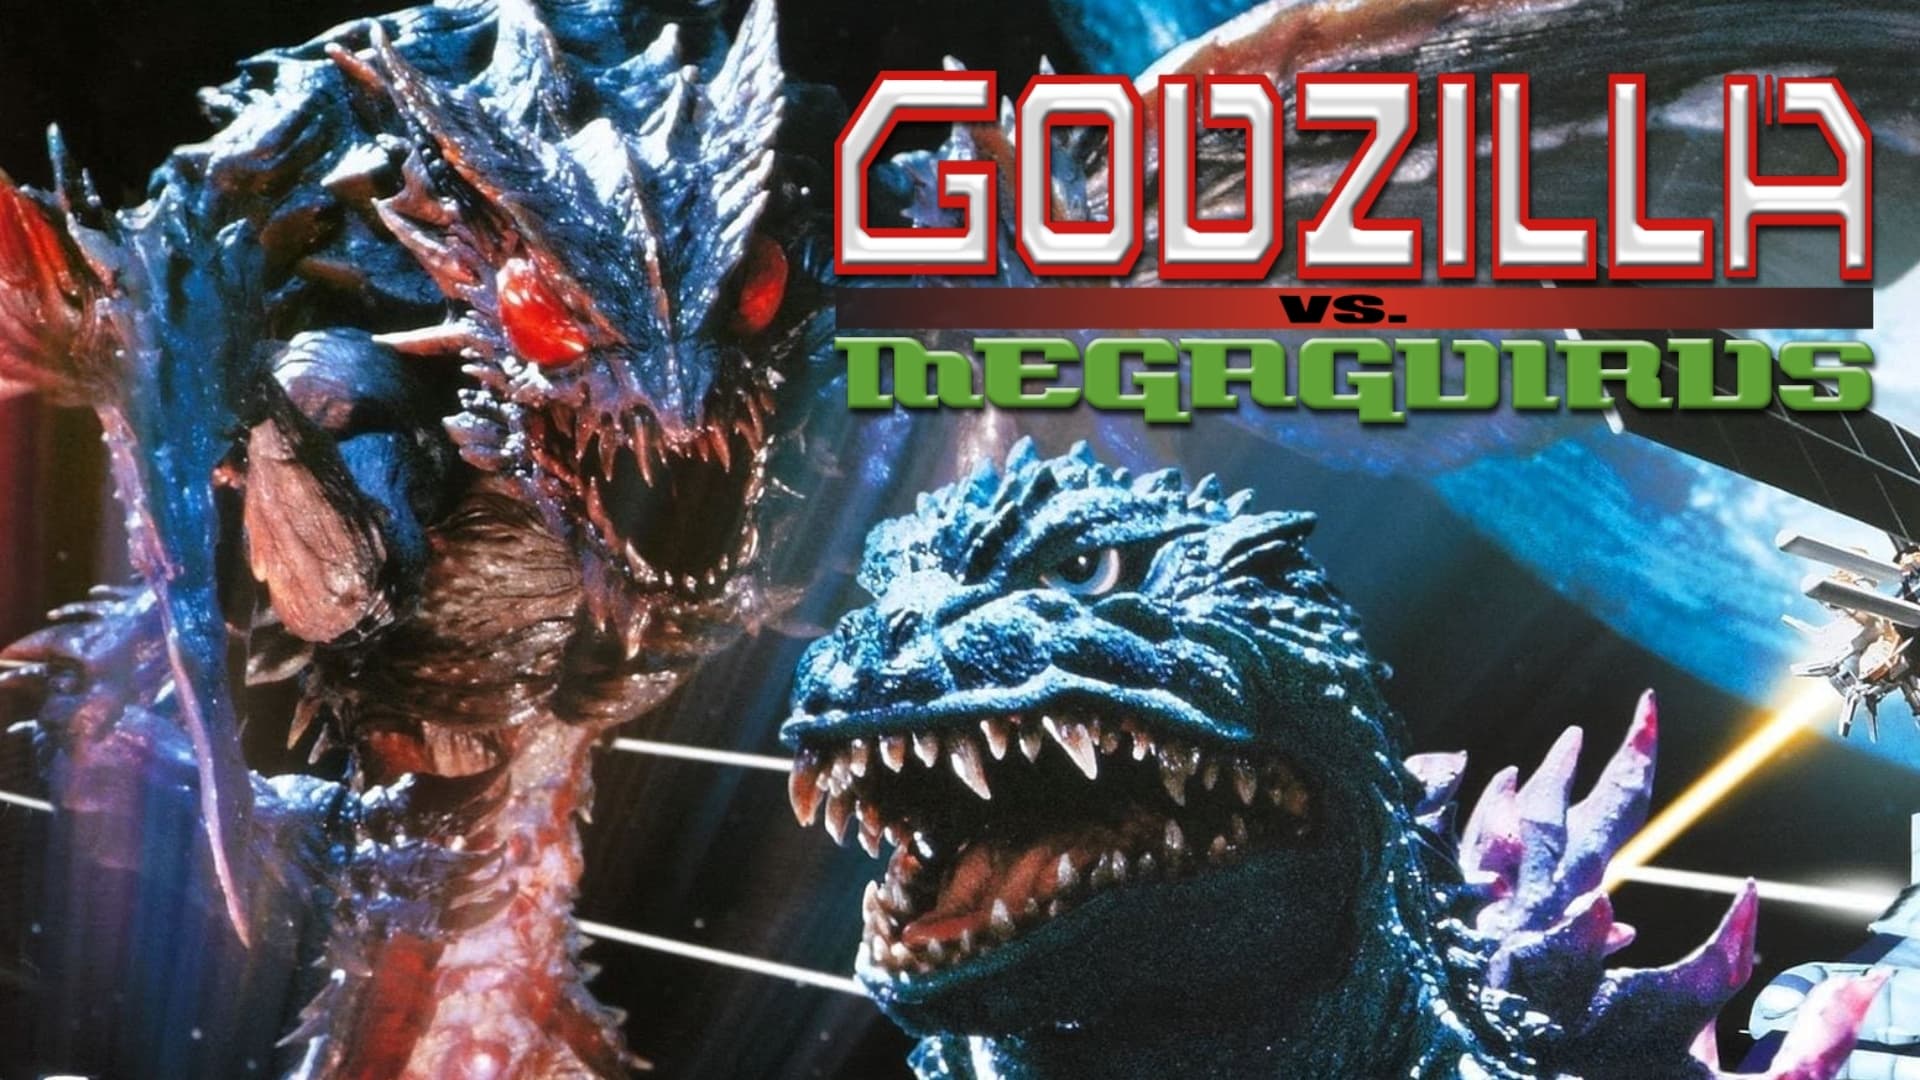 Godzilla contra Megaguirus